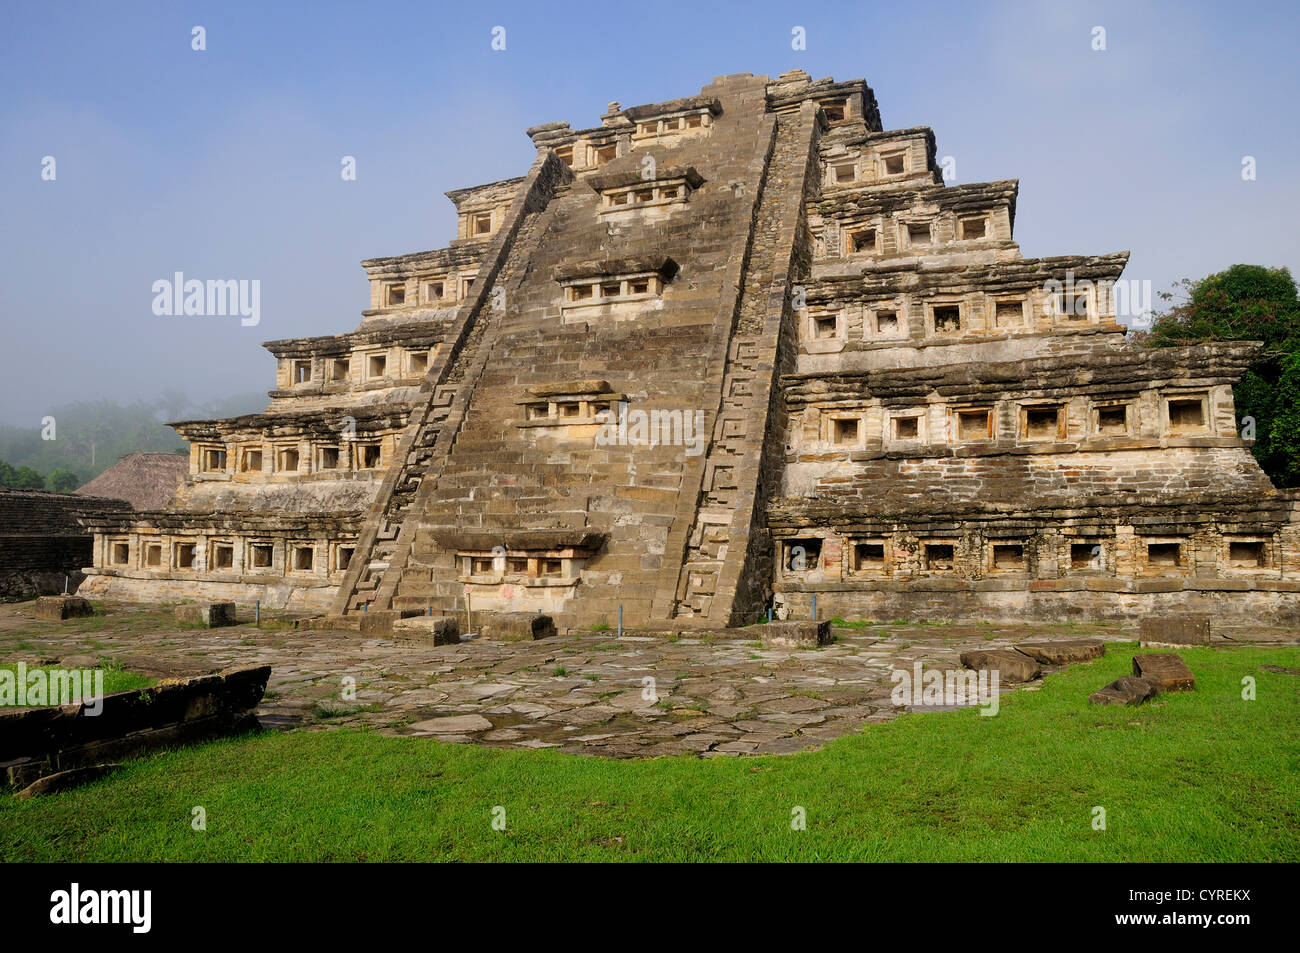 Mexico, Veracruz, Papantla, El Tajin archaeological site, Pyramid of the Niches, Pyramide de los Nichos. Stock Photo